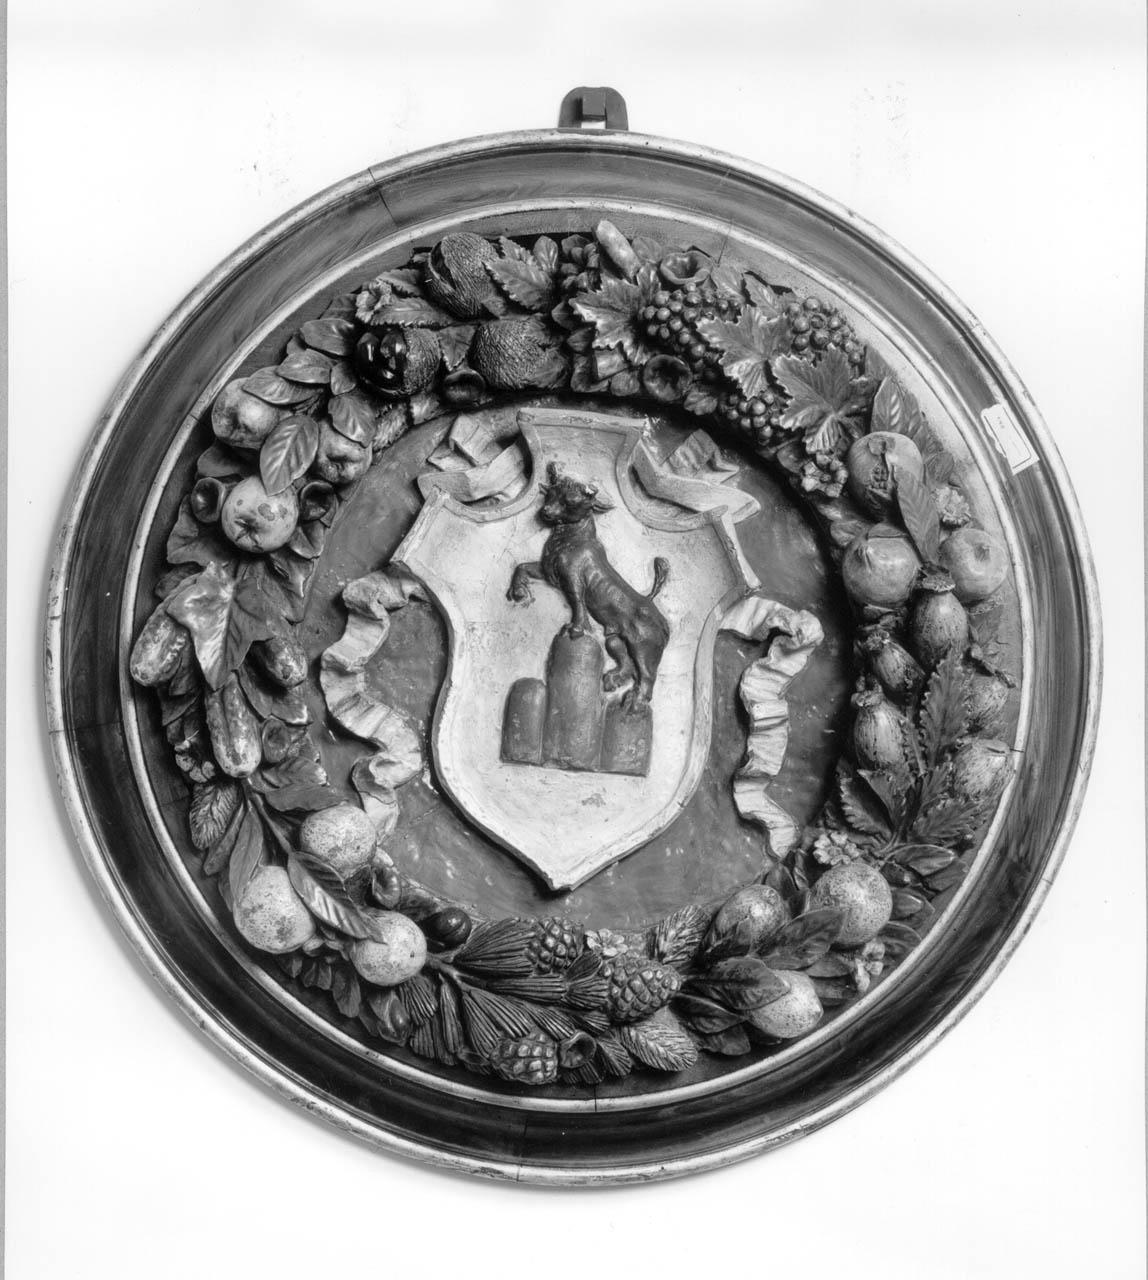 stemma gentilizio della famiglia Buonafede (rilievo) - manifattura fiorentina (fine/ inizio secc. XV/ XVI)